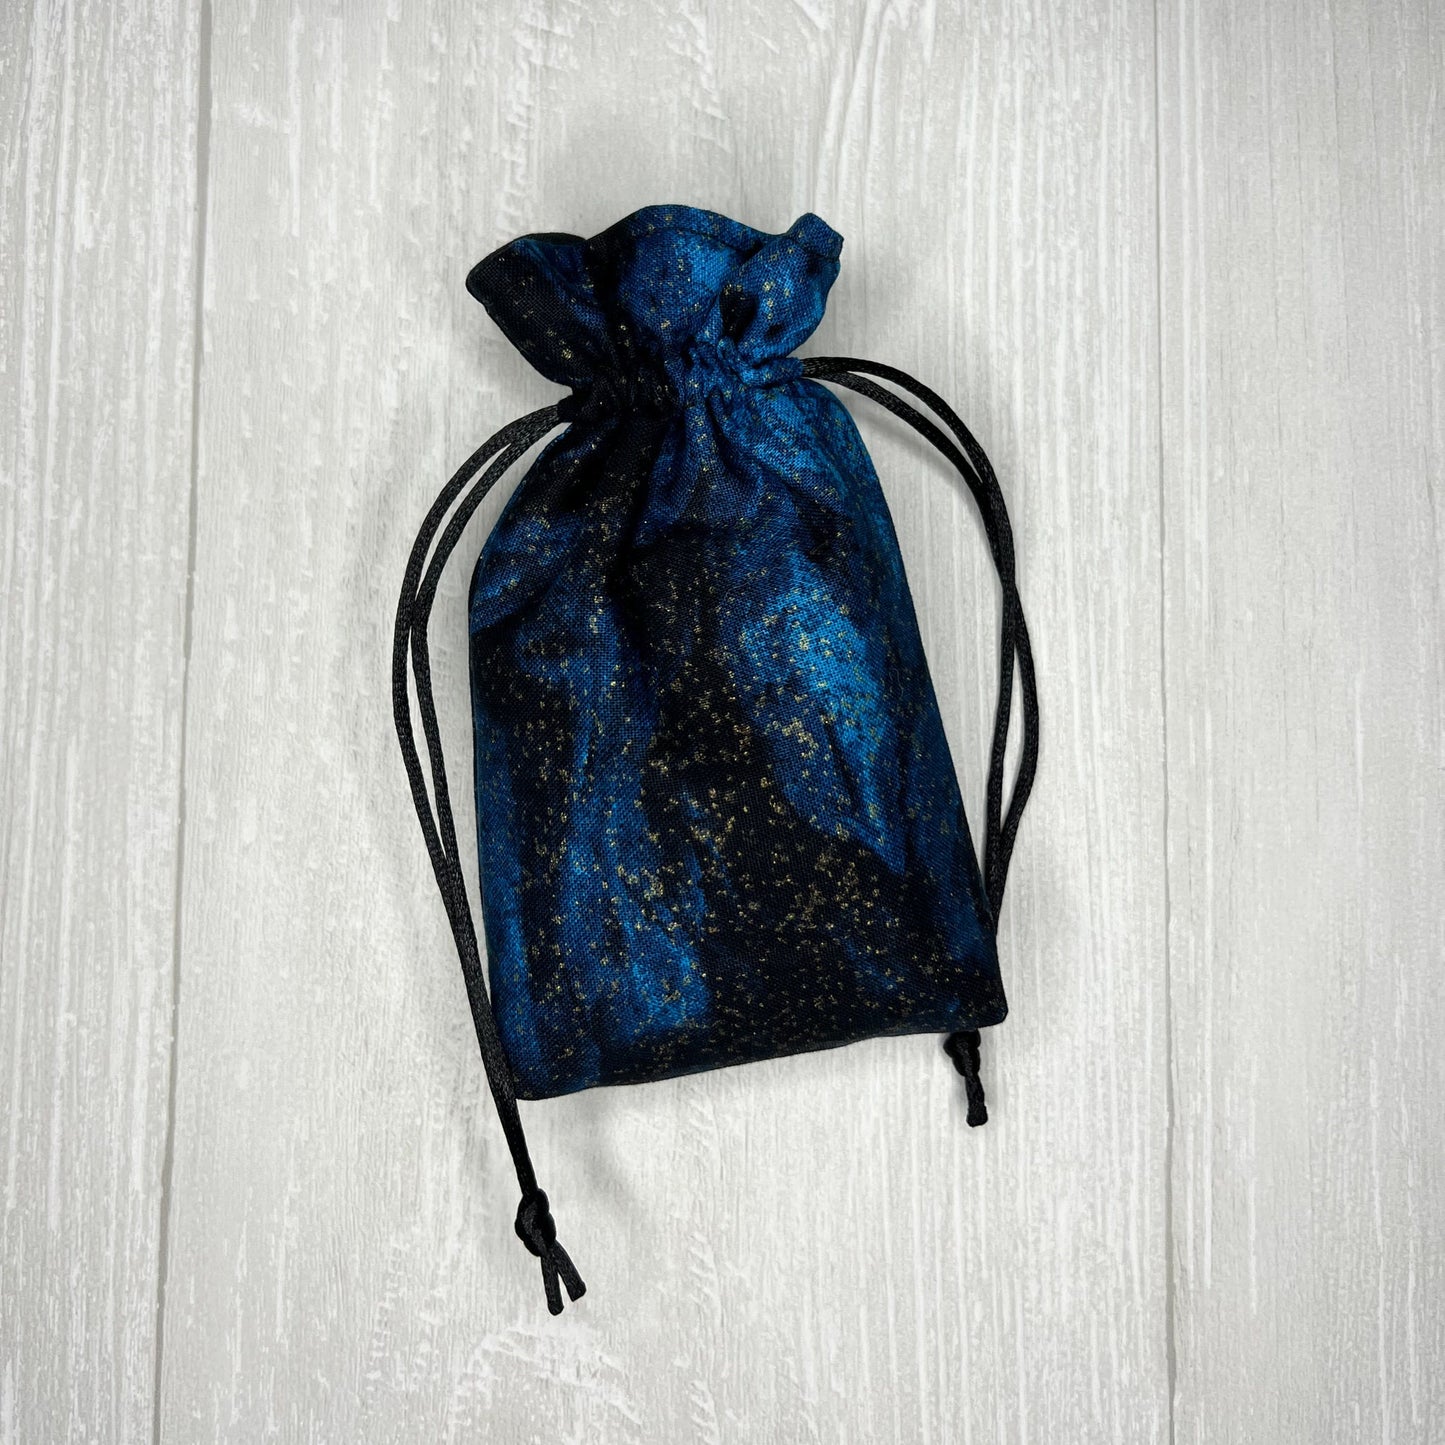 Mini Sized Blue & Black Galactic Drawstring Bag